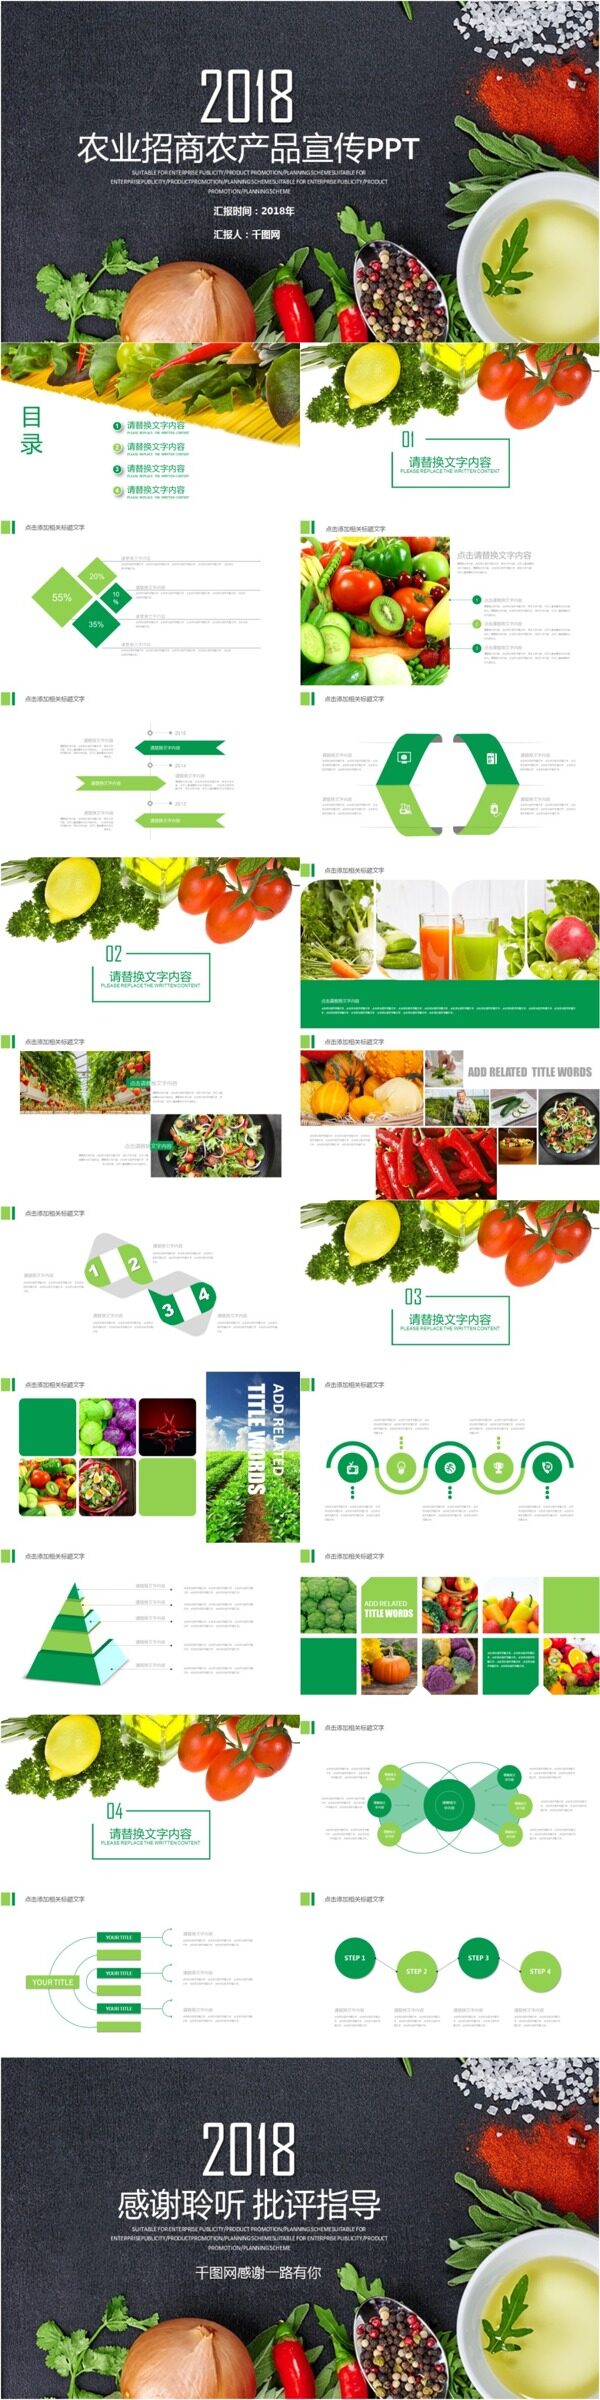 绿色健康农业宣传产品介绍PPT模板免费下载